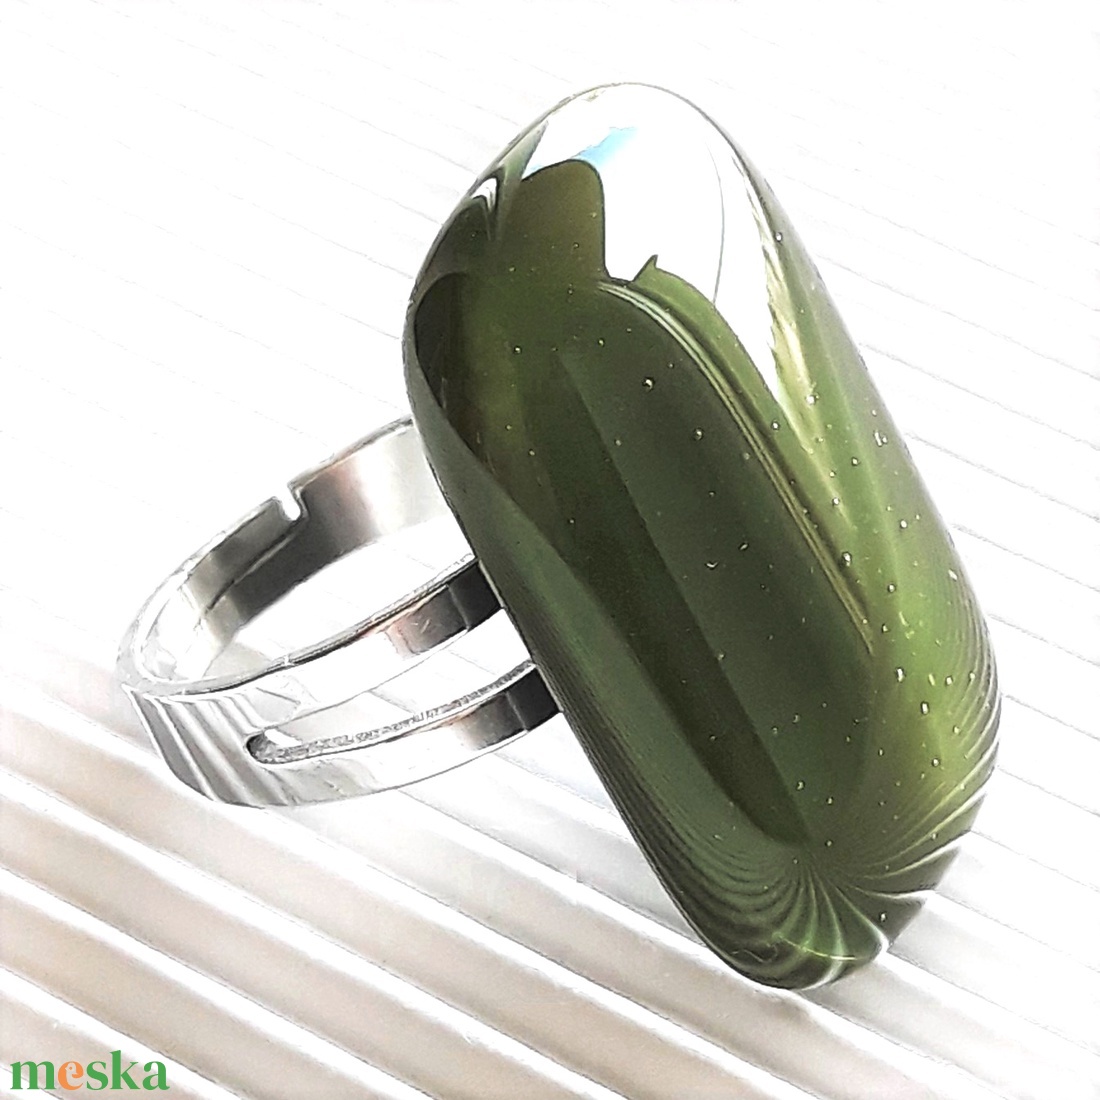 Mohazöld elegáns üveg gyűrű, üvegékszer - ékszer - gyűrű - statement gyűrű - Meska.hu